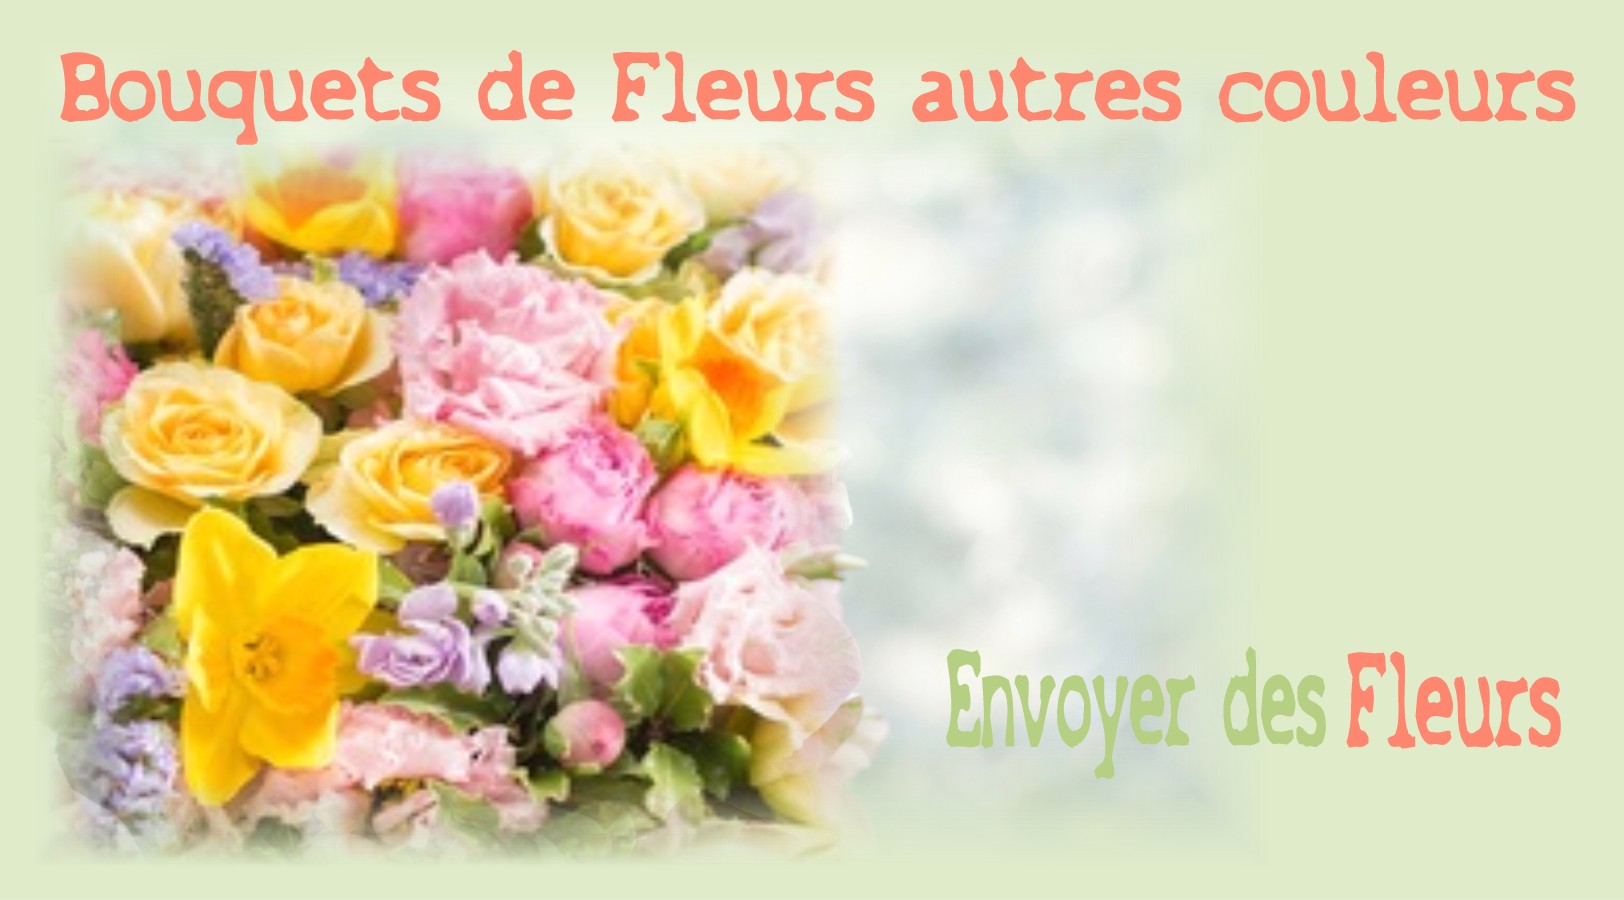 BOUQUETS DE FLEURS AUTRES COULEURS - FLEURISTE MARSEILLE (13) - ENVOYER DES FLEURS